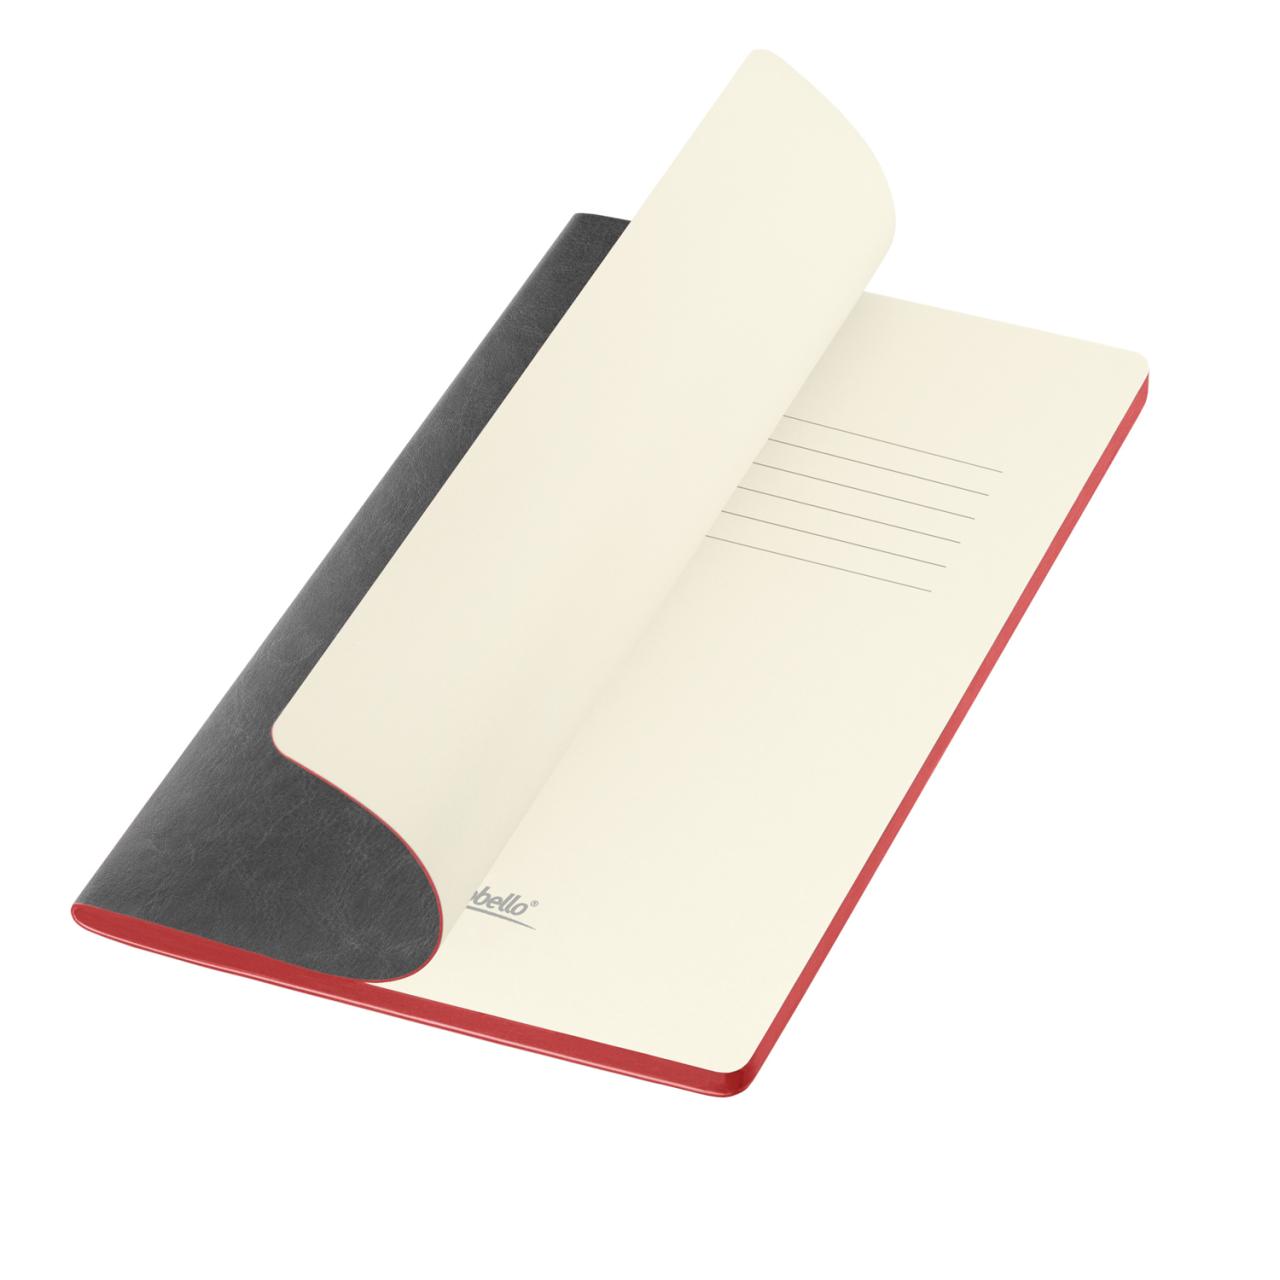 Блокнот Portobello Notebook Trend, River side slim, черный/красный